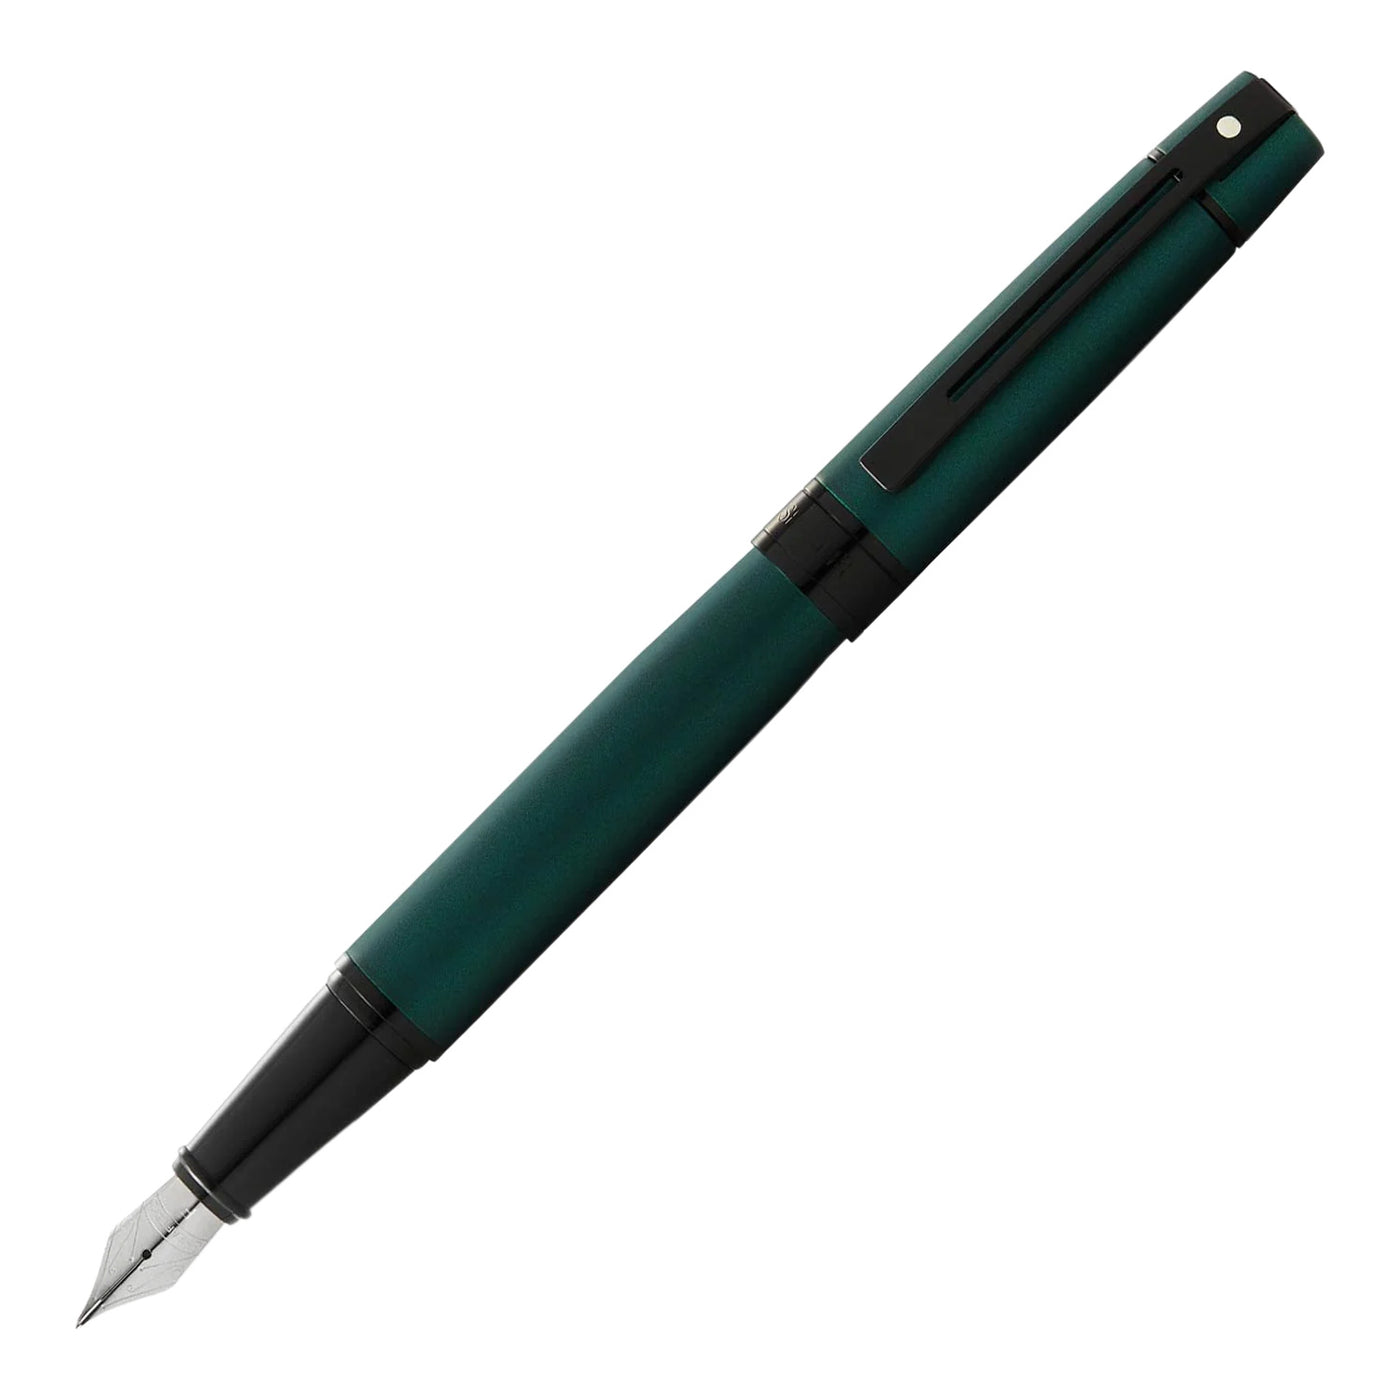 Sheaffer 300 Fountain Pen - Matte Green BT 1